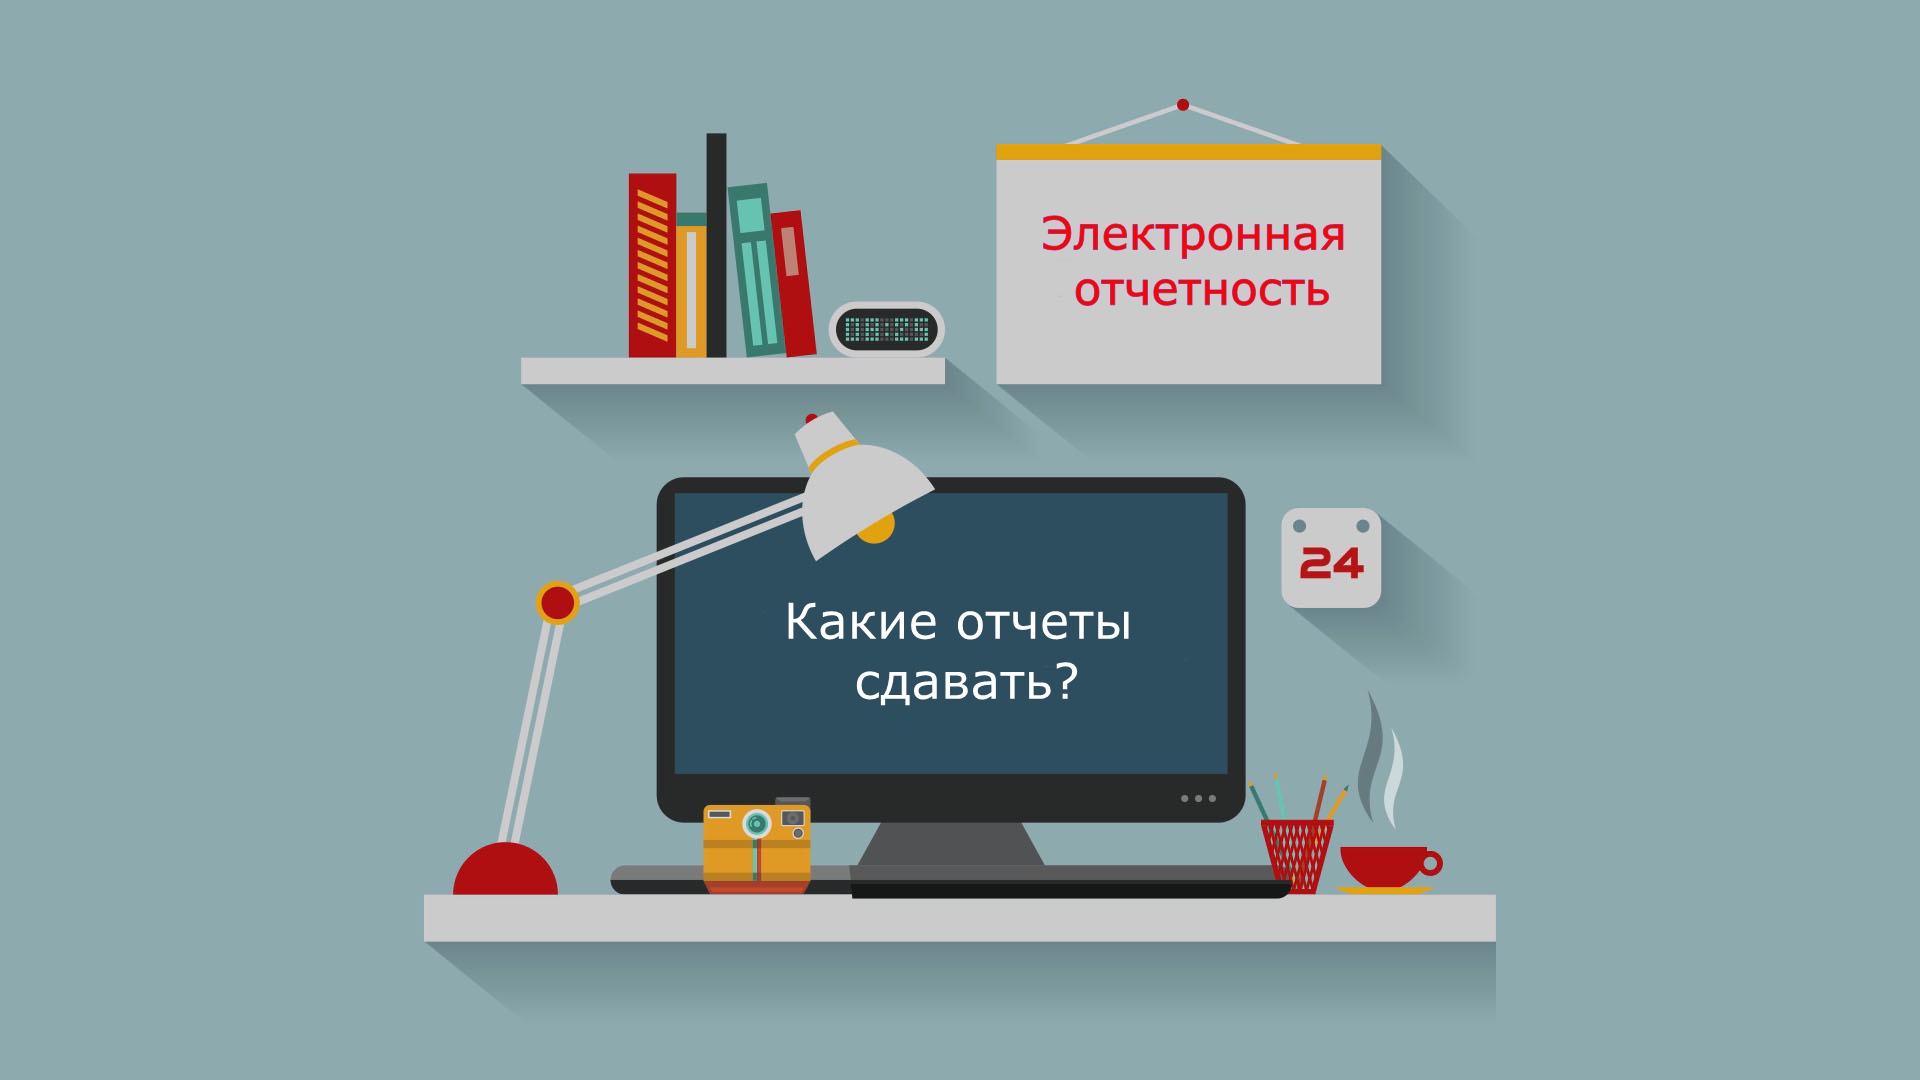 Websbor gks ru. Вебсбор. Отчет рисунок. Веб сбор. Нижегородстат система Вебсбора.